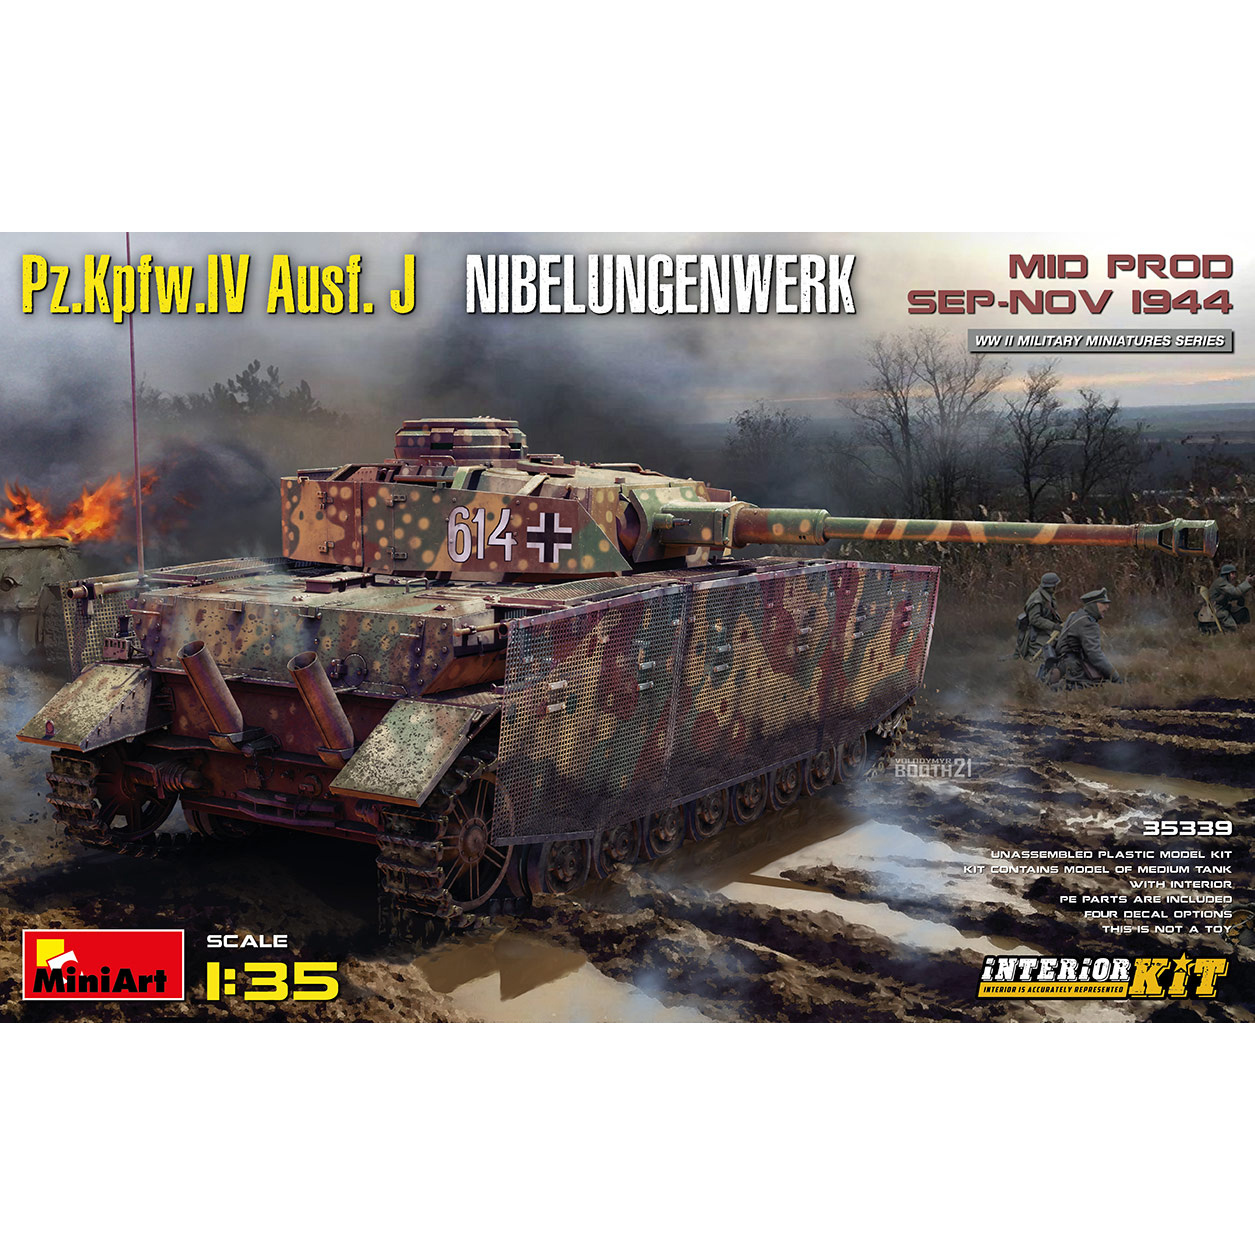 35339 MiniArt 1/35 Танк Pz.Kpfw.IV Ausf. J Nibelungenwerk